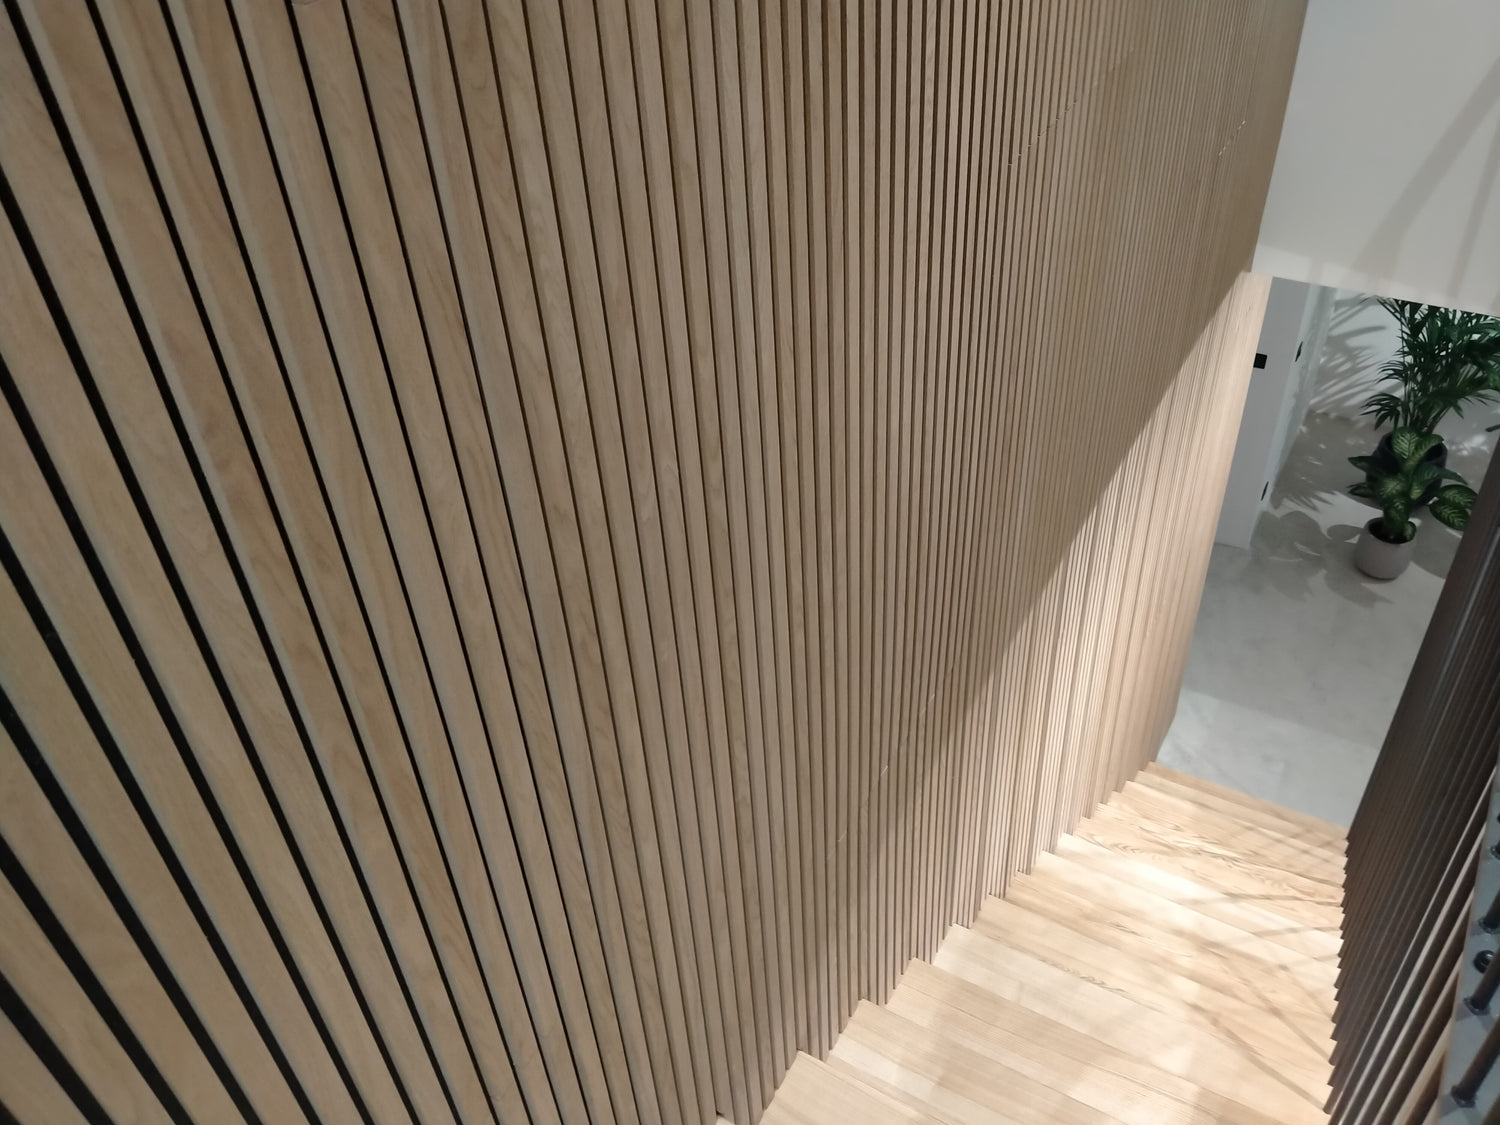 Mur d'escalier en tasseaux de bois